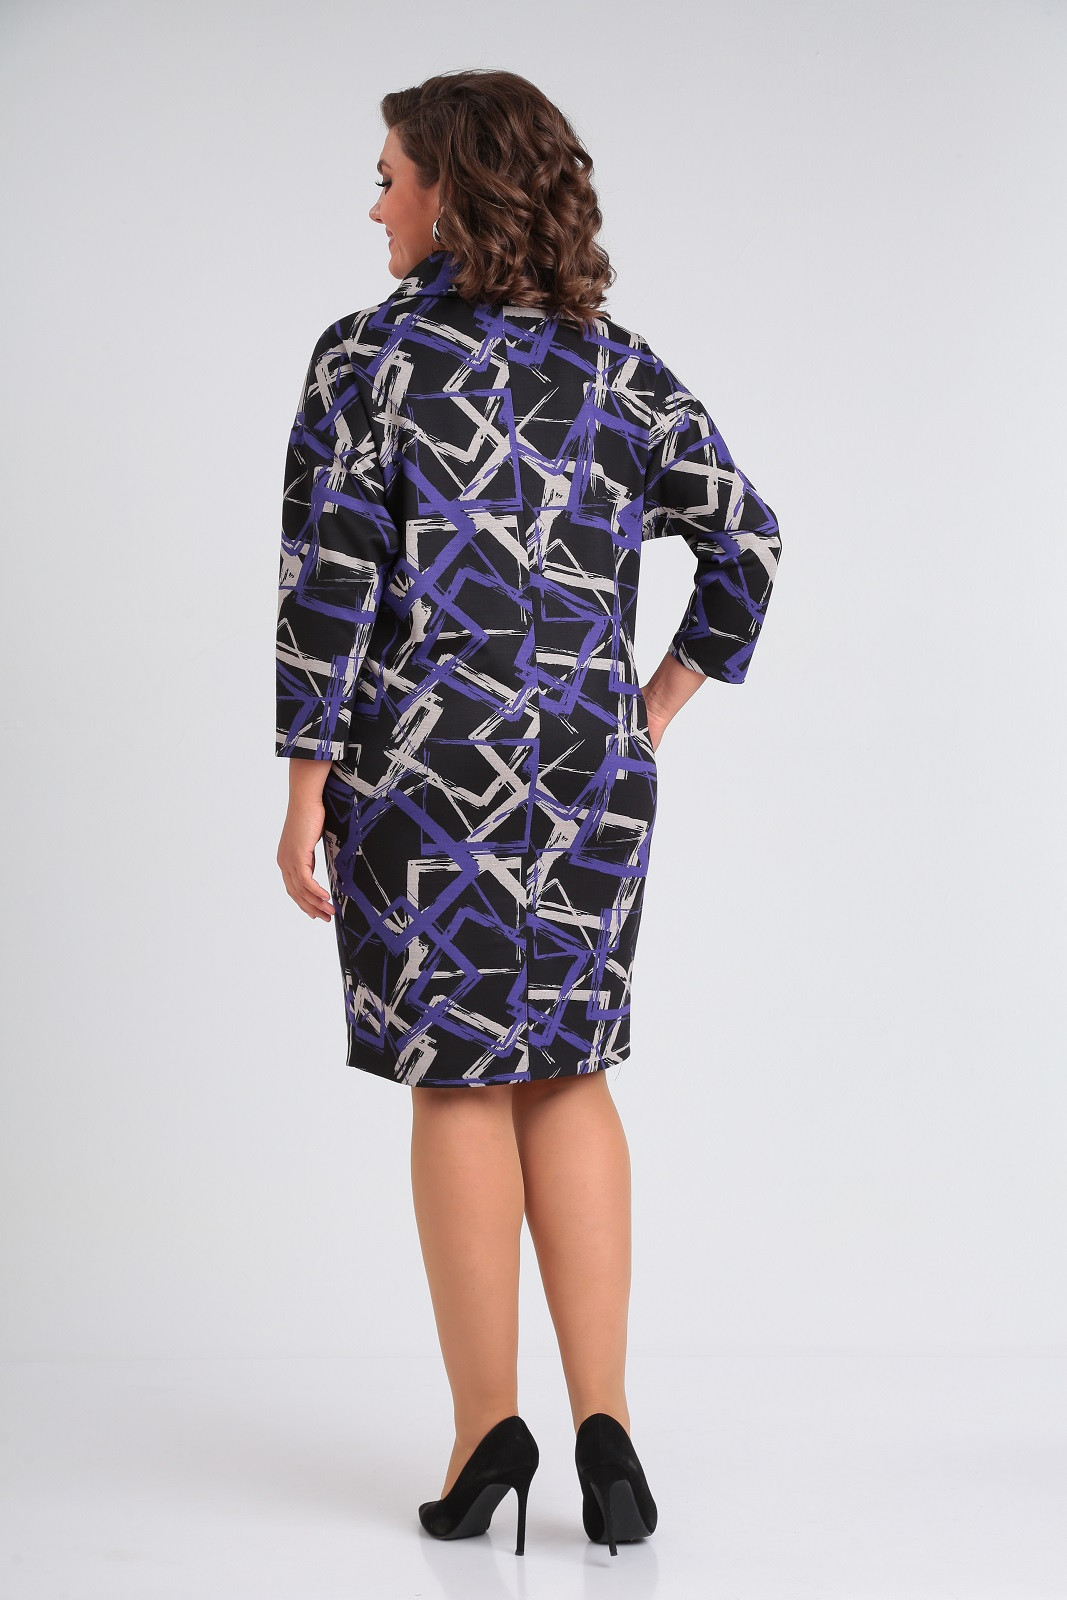 Платье Кокетка и К 1081-1 черный+серый+фиолетовый